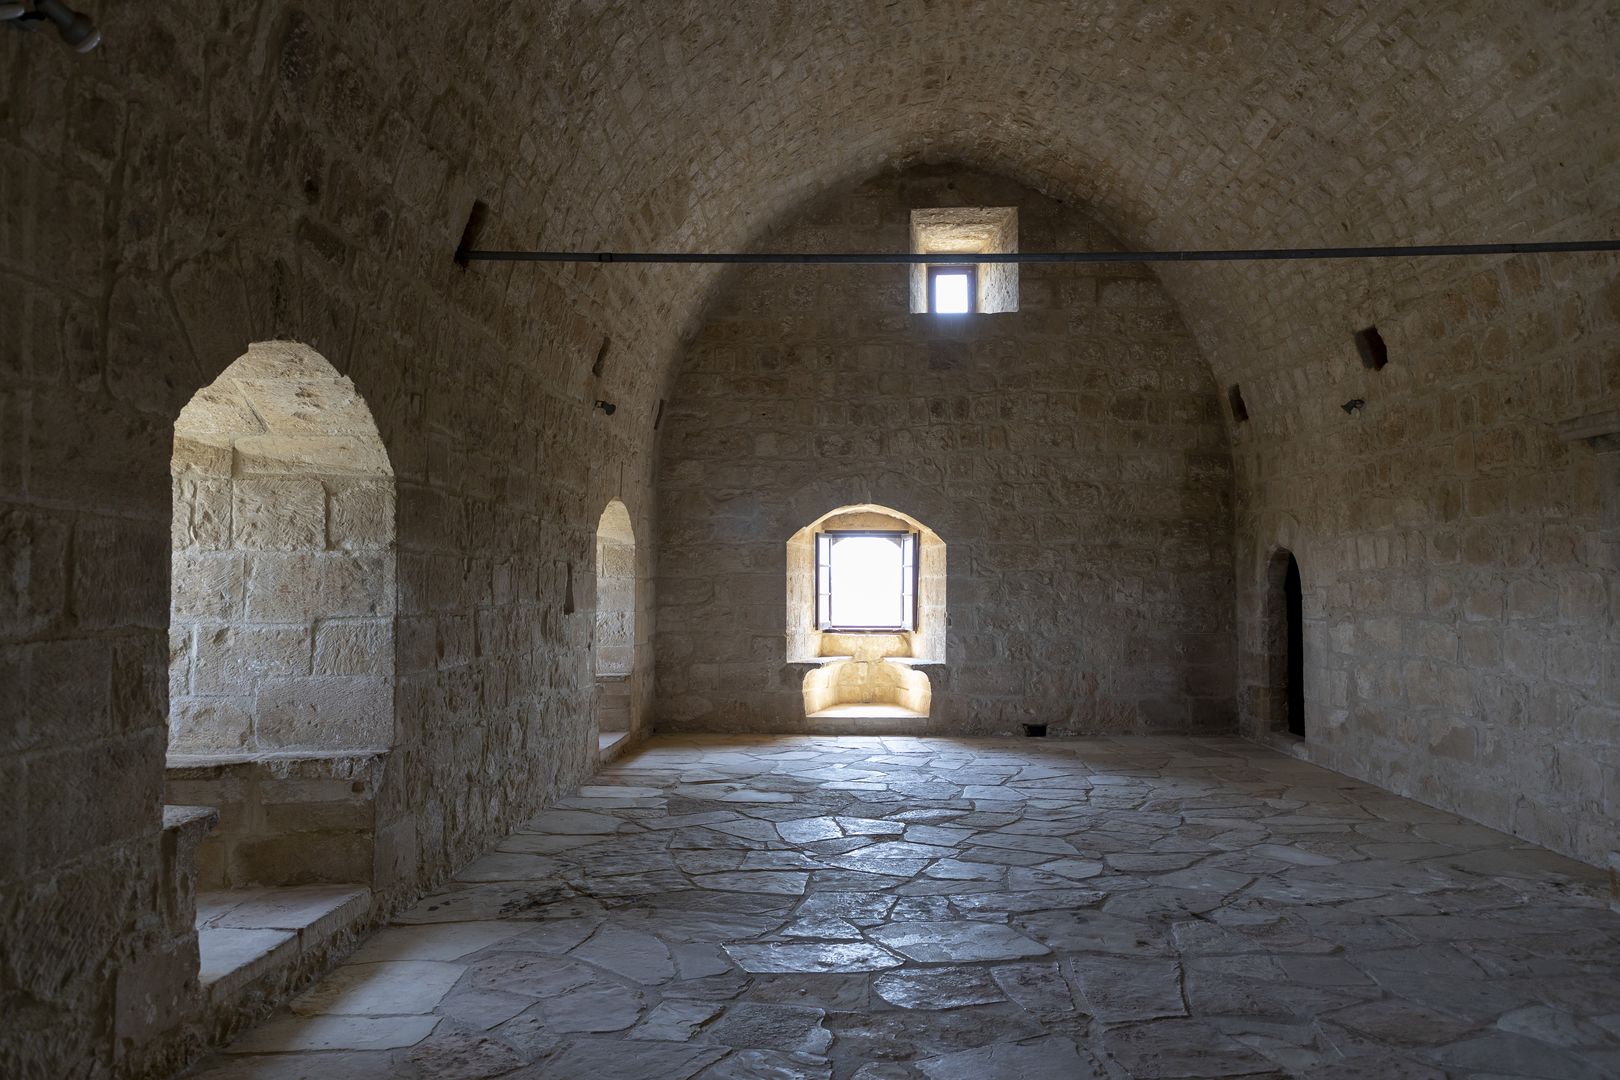 Niesamowite dzieje fortecy na Cyprze. Tutaj zrodziły się legendy